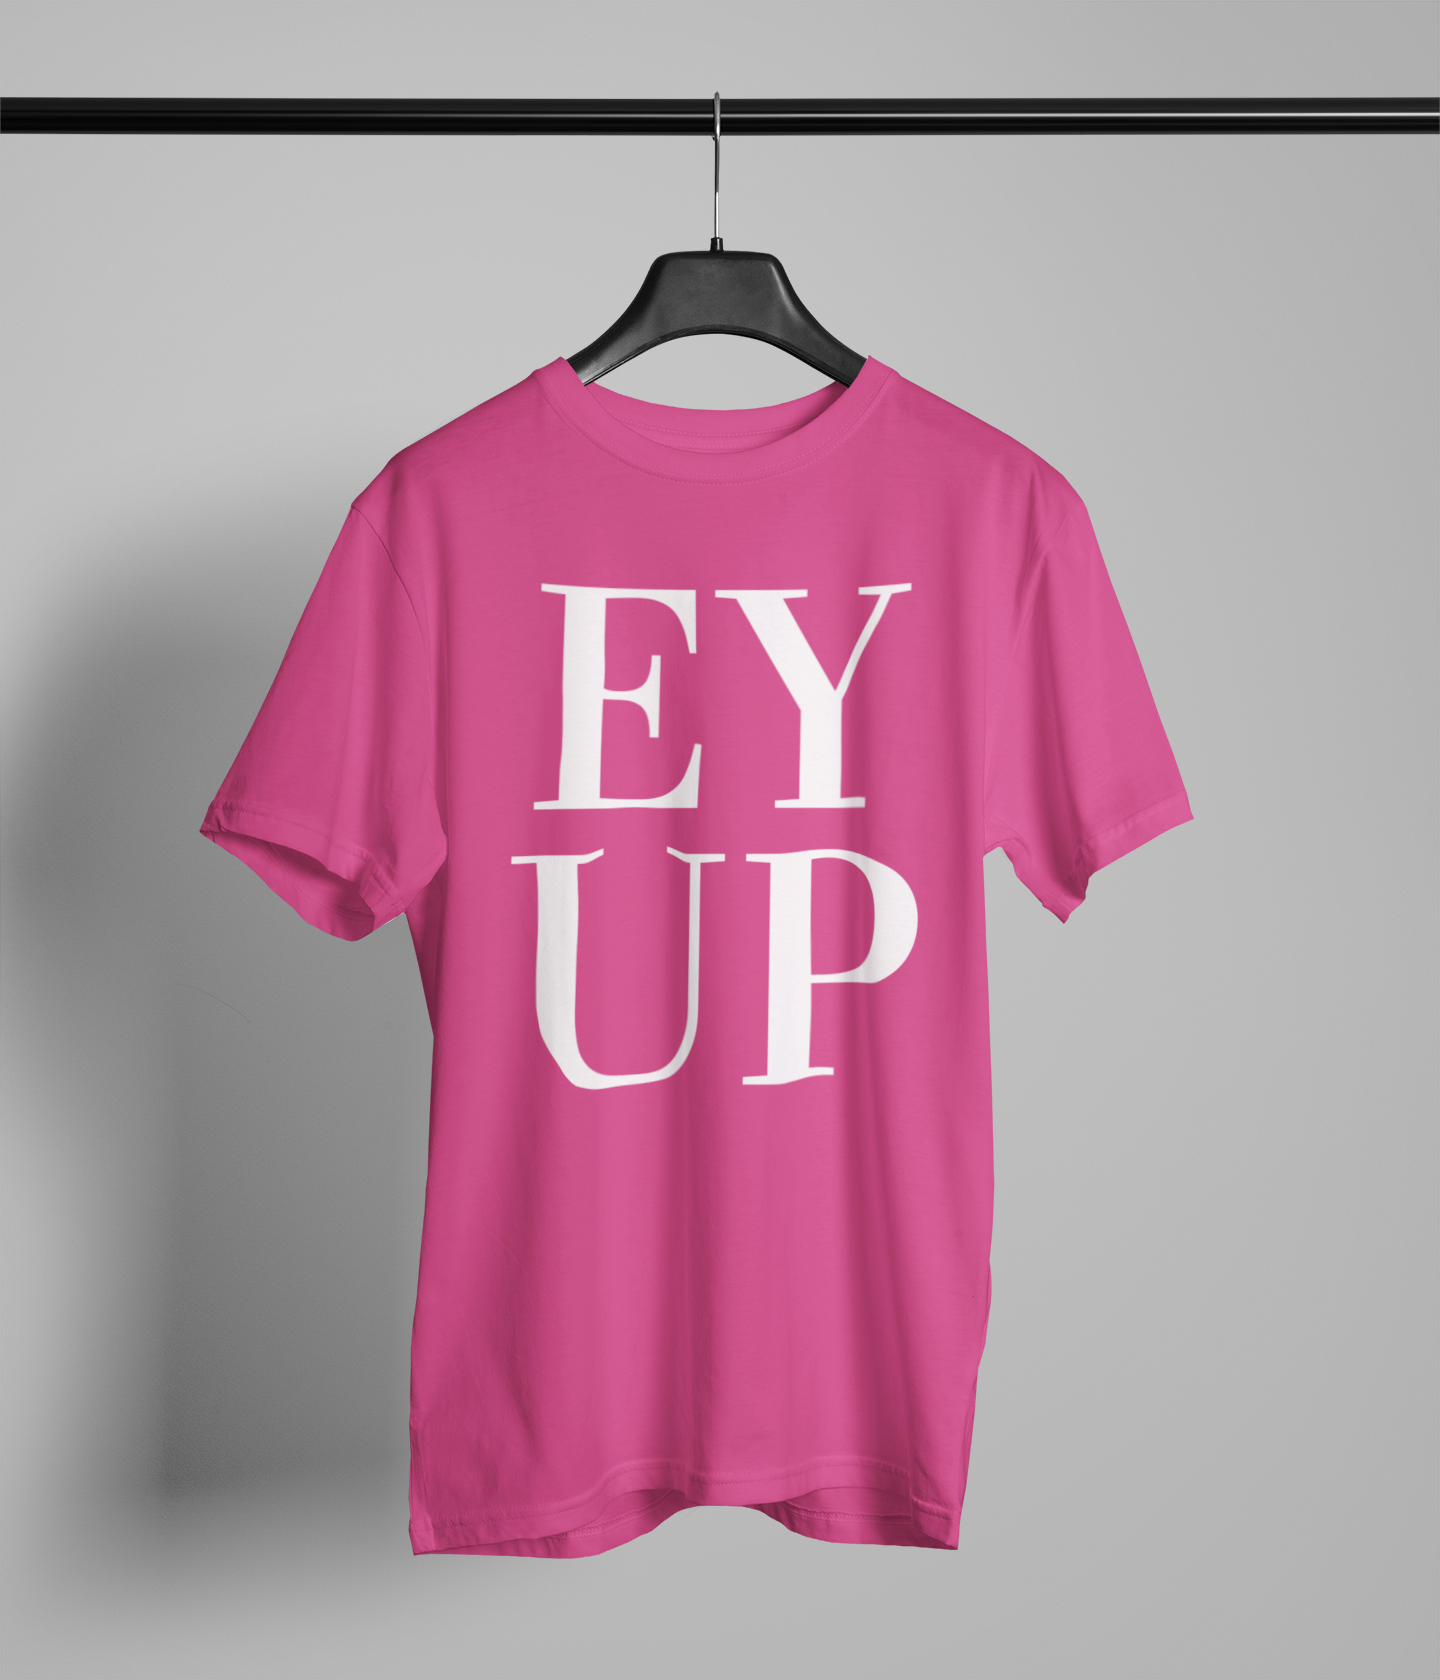 EYUP Northern Slang T-Shirt Unisex